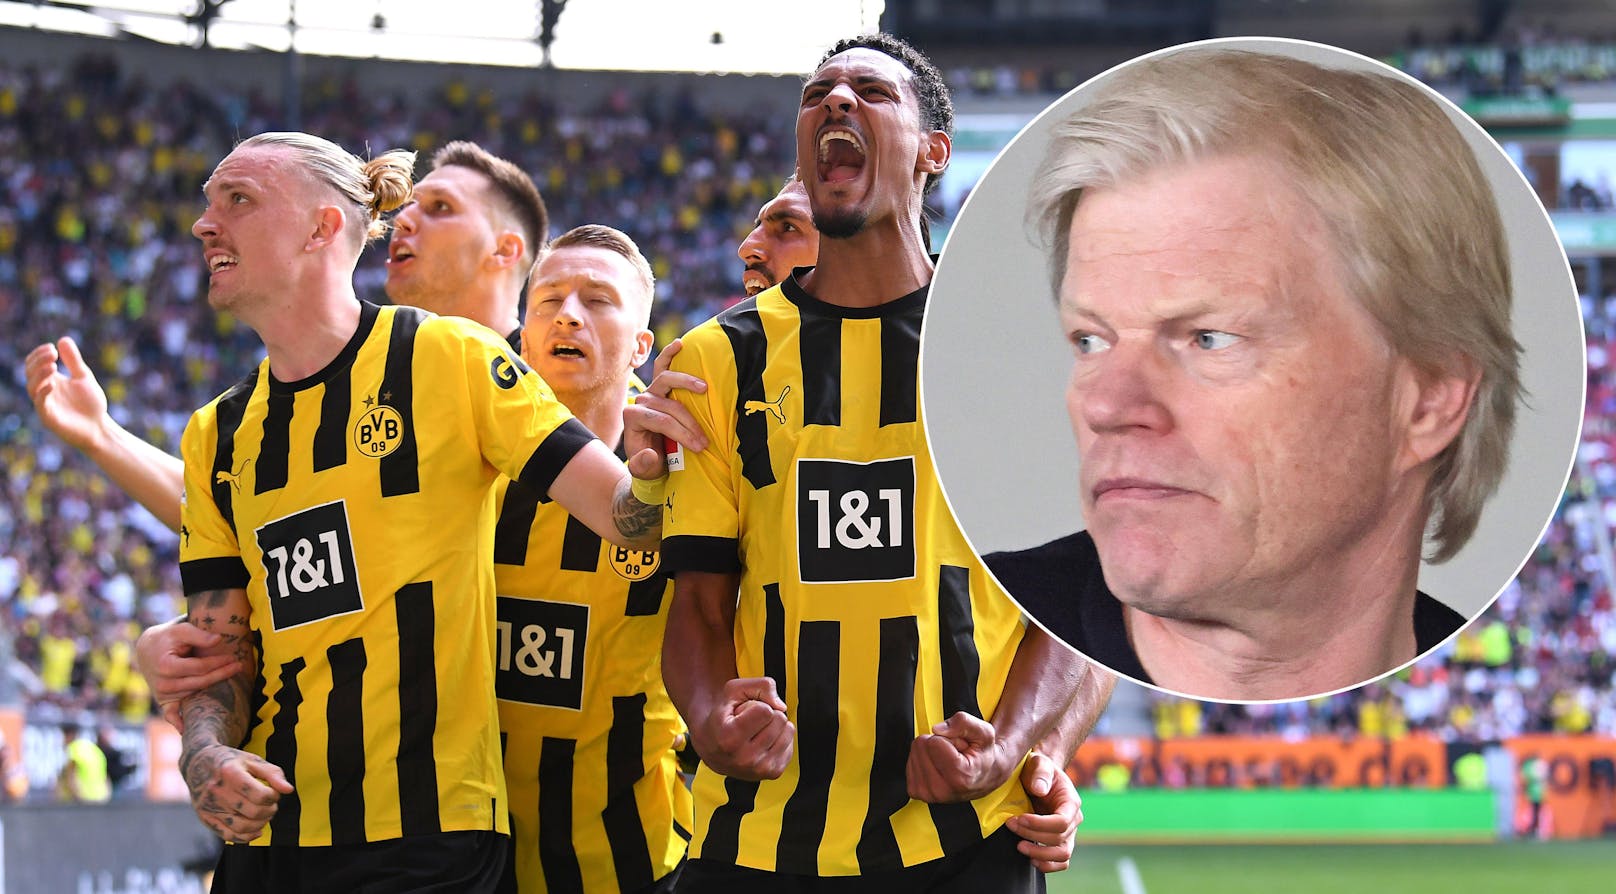 Dortmund auf Titelkurs – das sagt Bayern-Boss Kahn